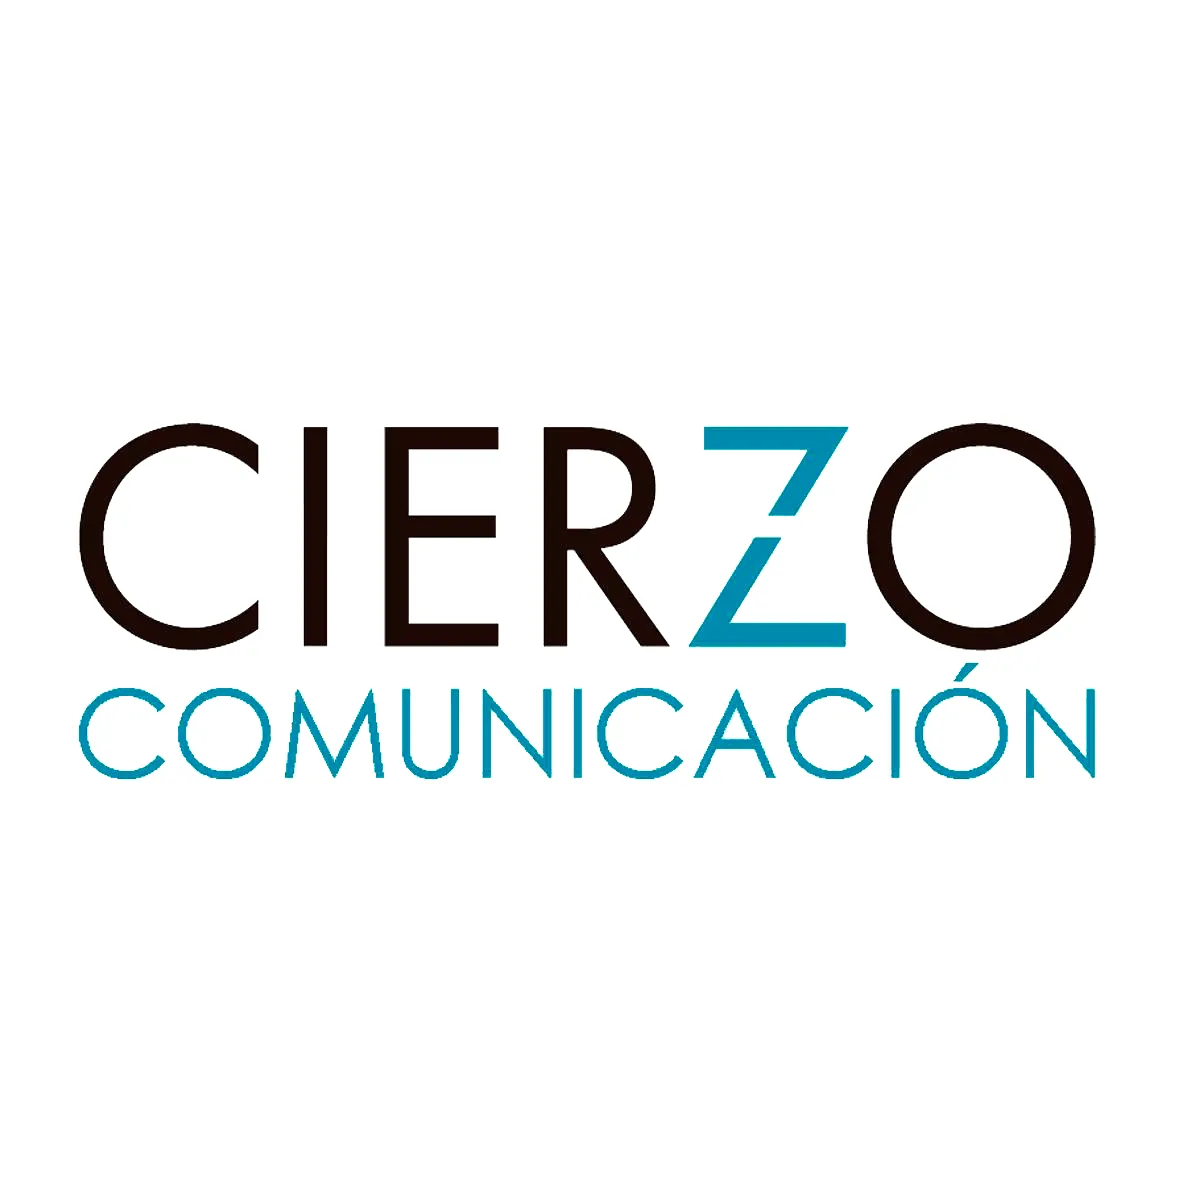 Cierzo Comunicación startup Unizar